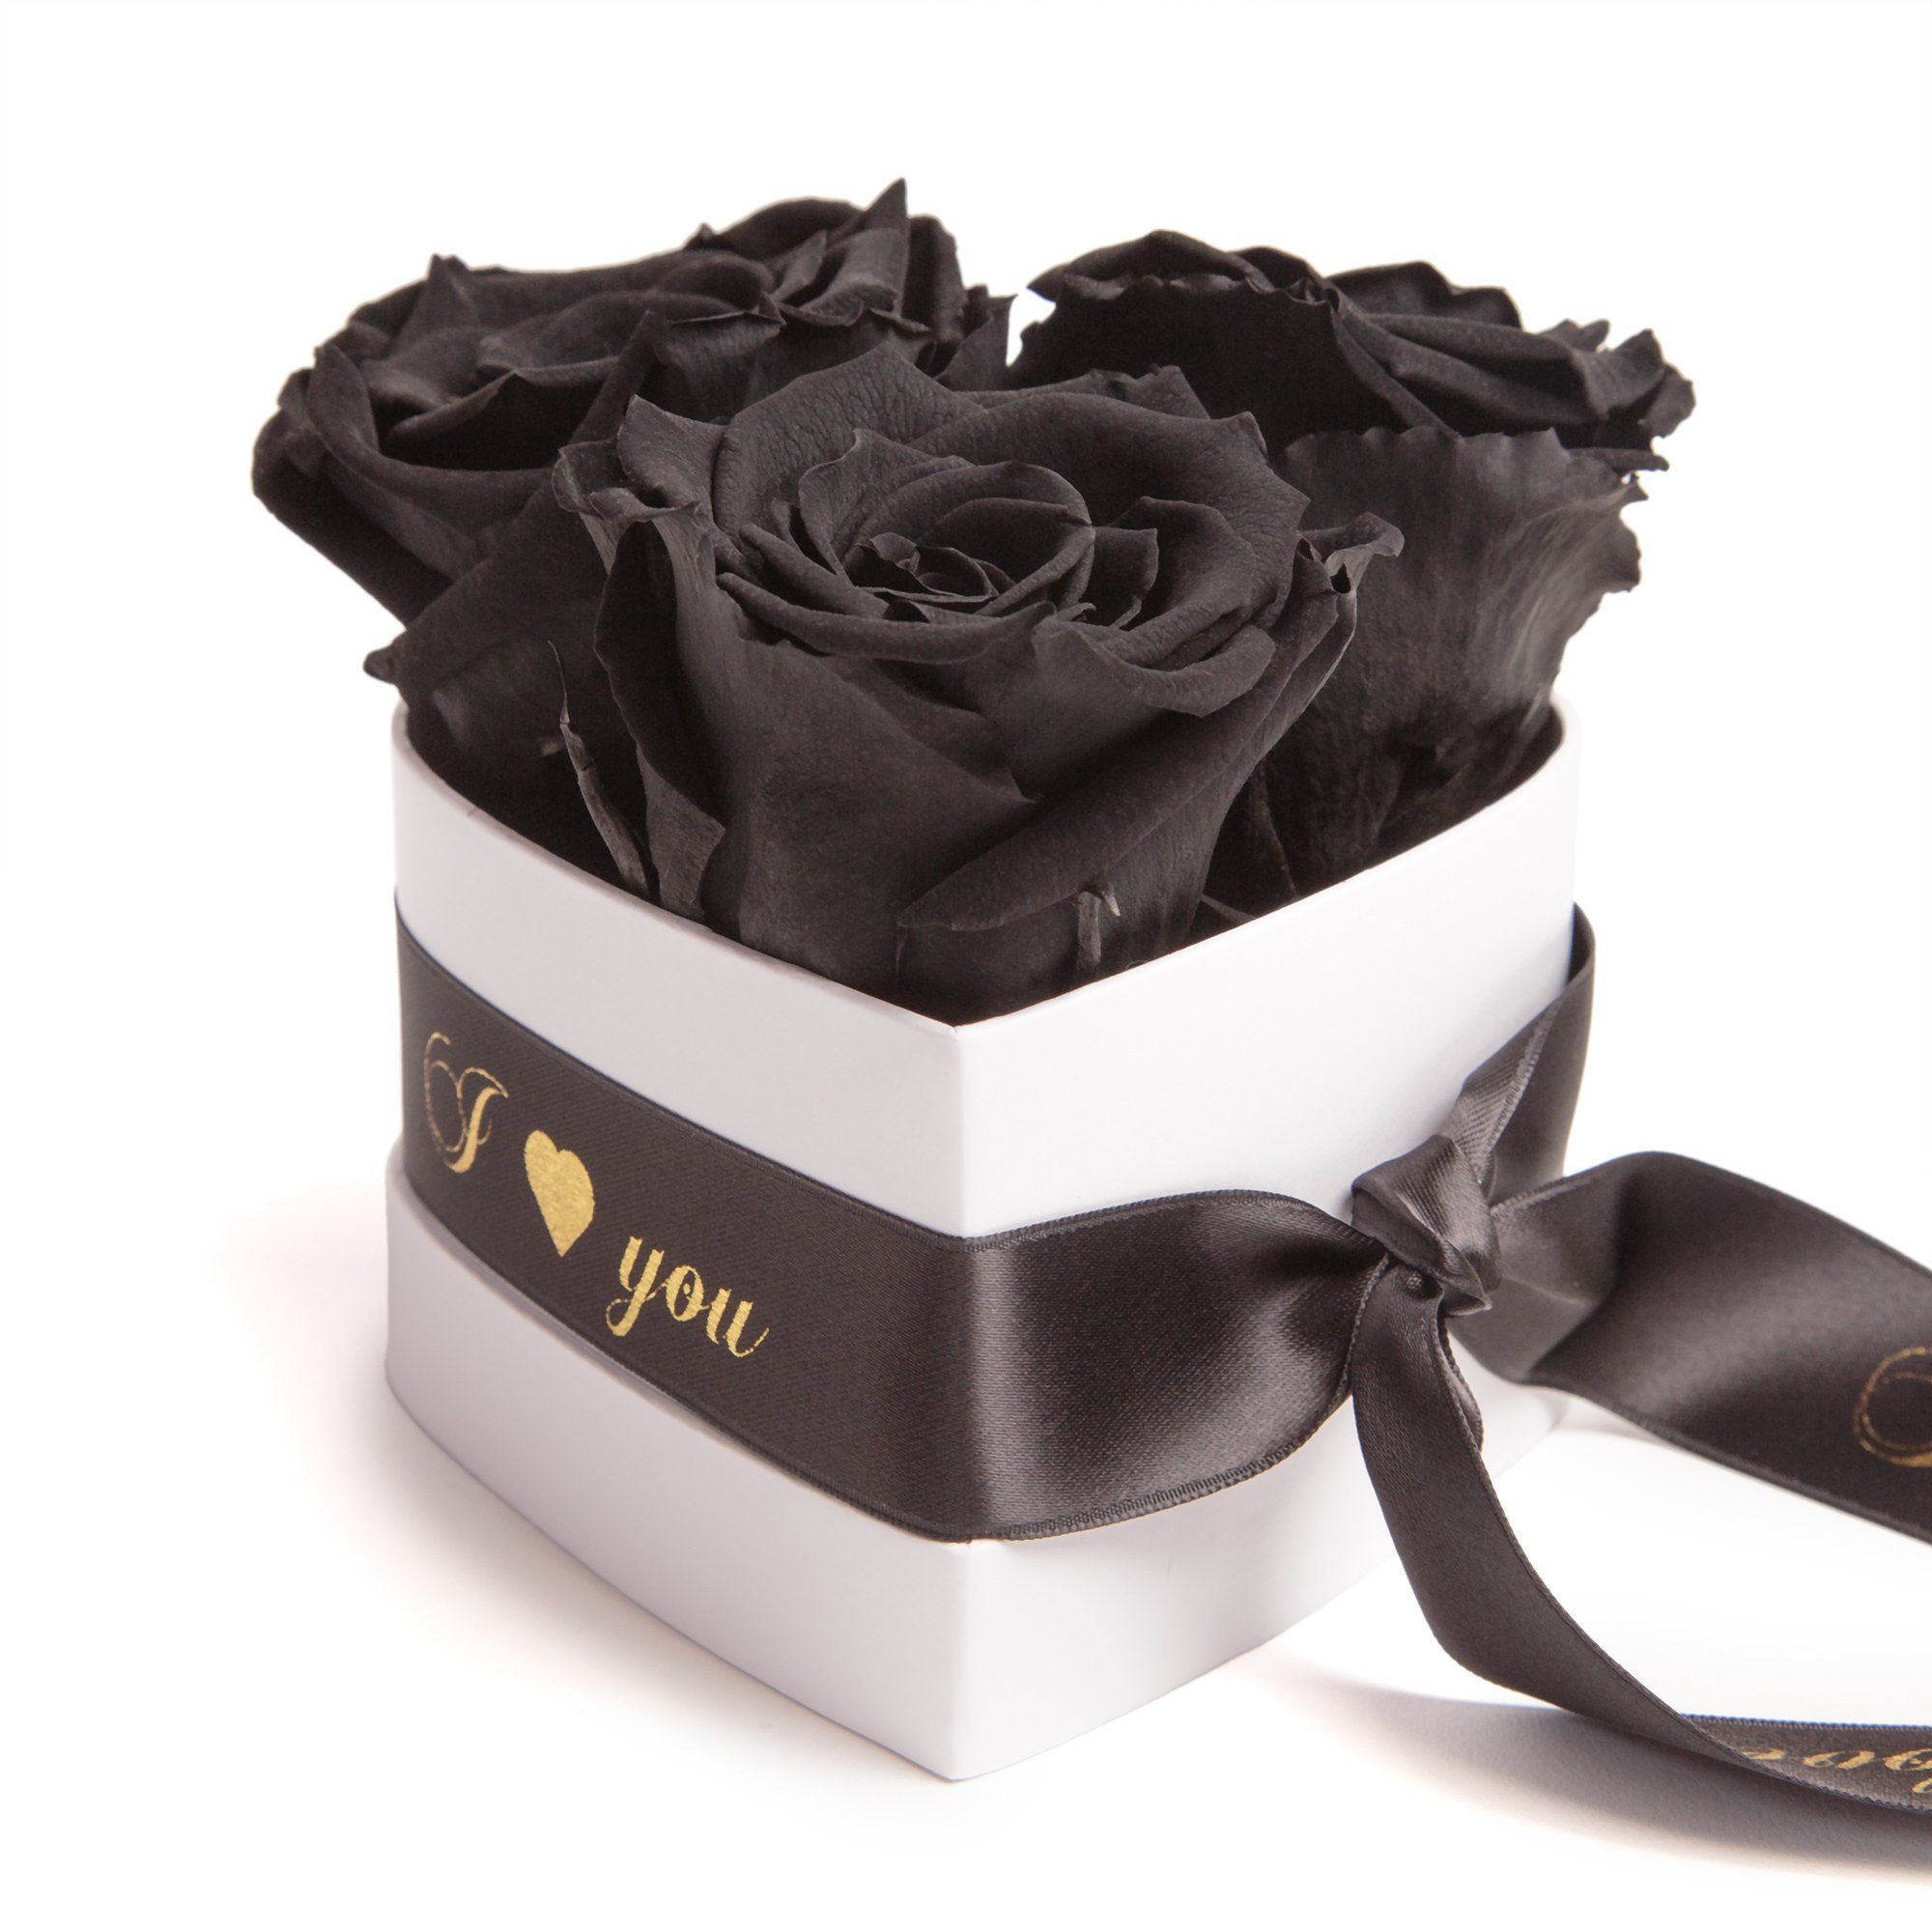 Kunstblume Rosenbox Herz 3 konservierte Infinity Rosen in Box I Love You Rose, ROSEMARIE SCHULZ Heidelberg, Höhe 8.5 cm, Valentinstag Geschenk für Sie Schwarz